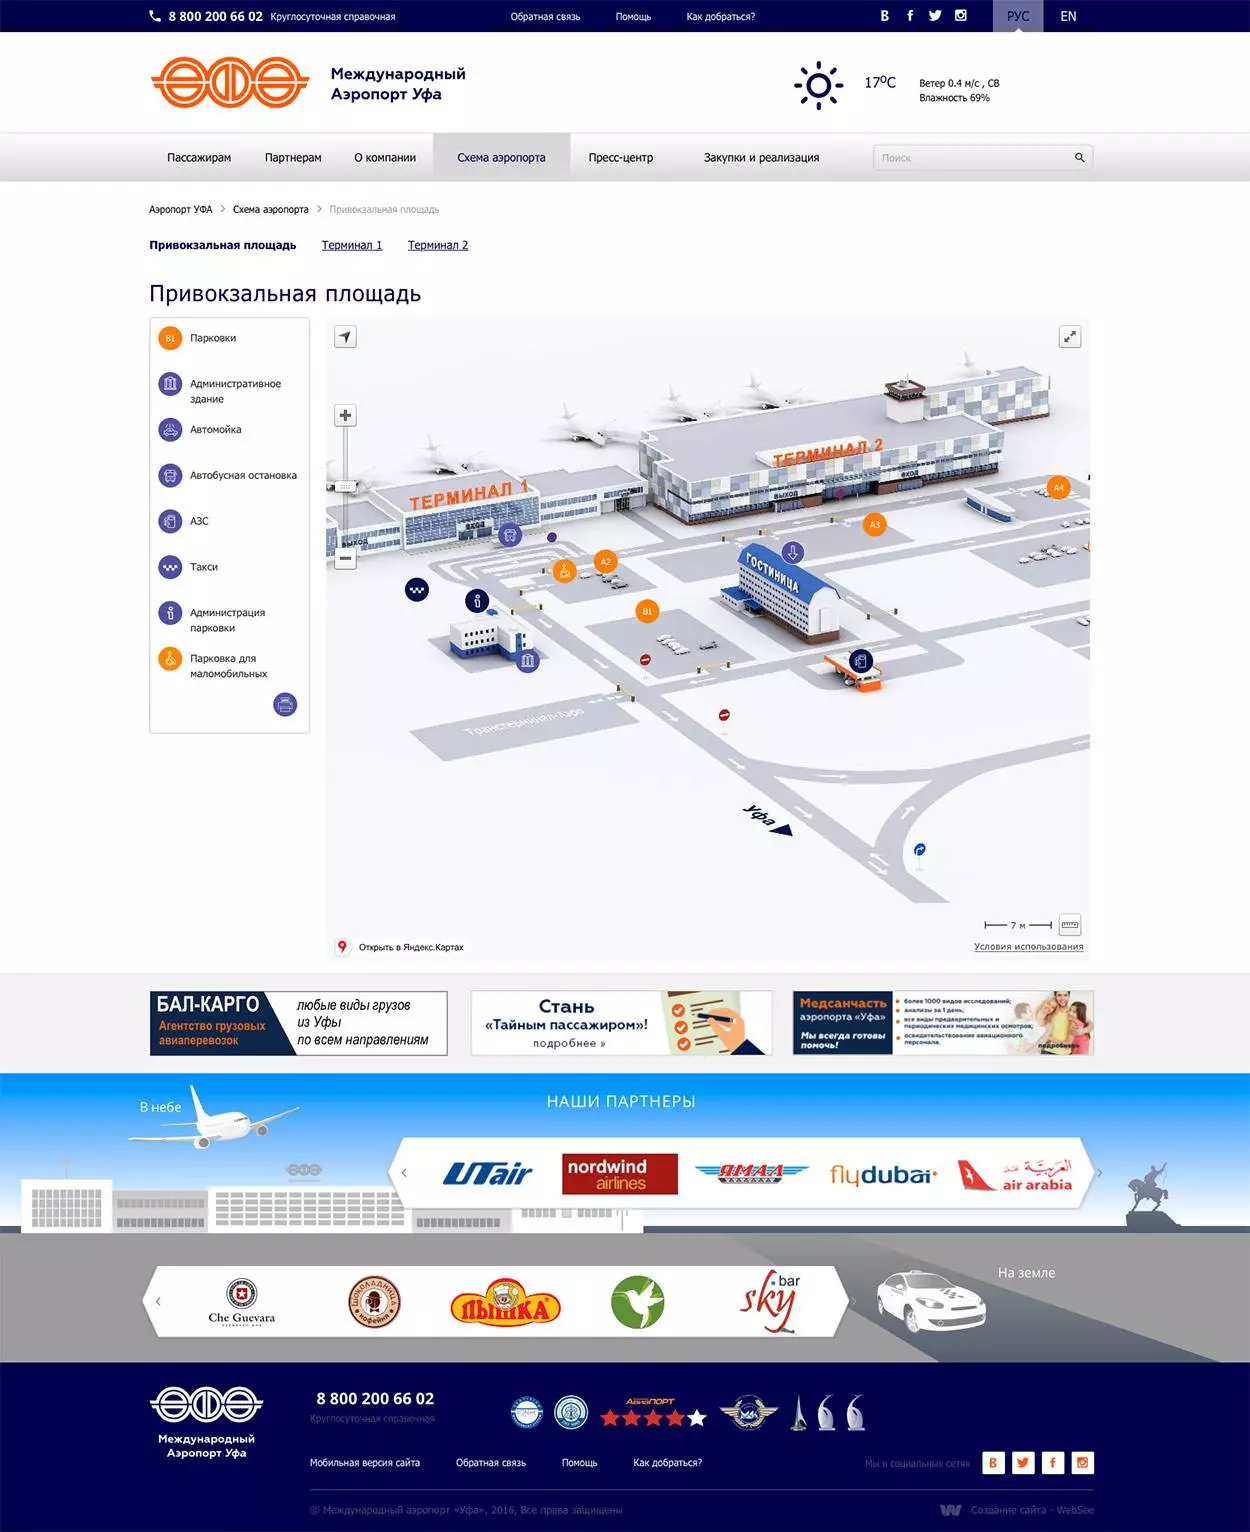 Аэропорт уфа: онлайн табло, как добраться, парковки, такси и гостиницы рядом